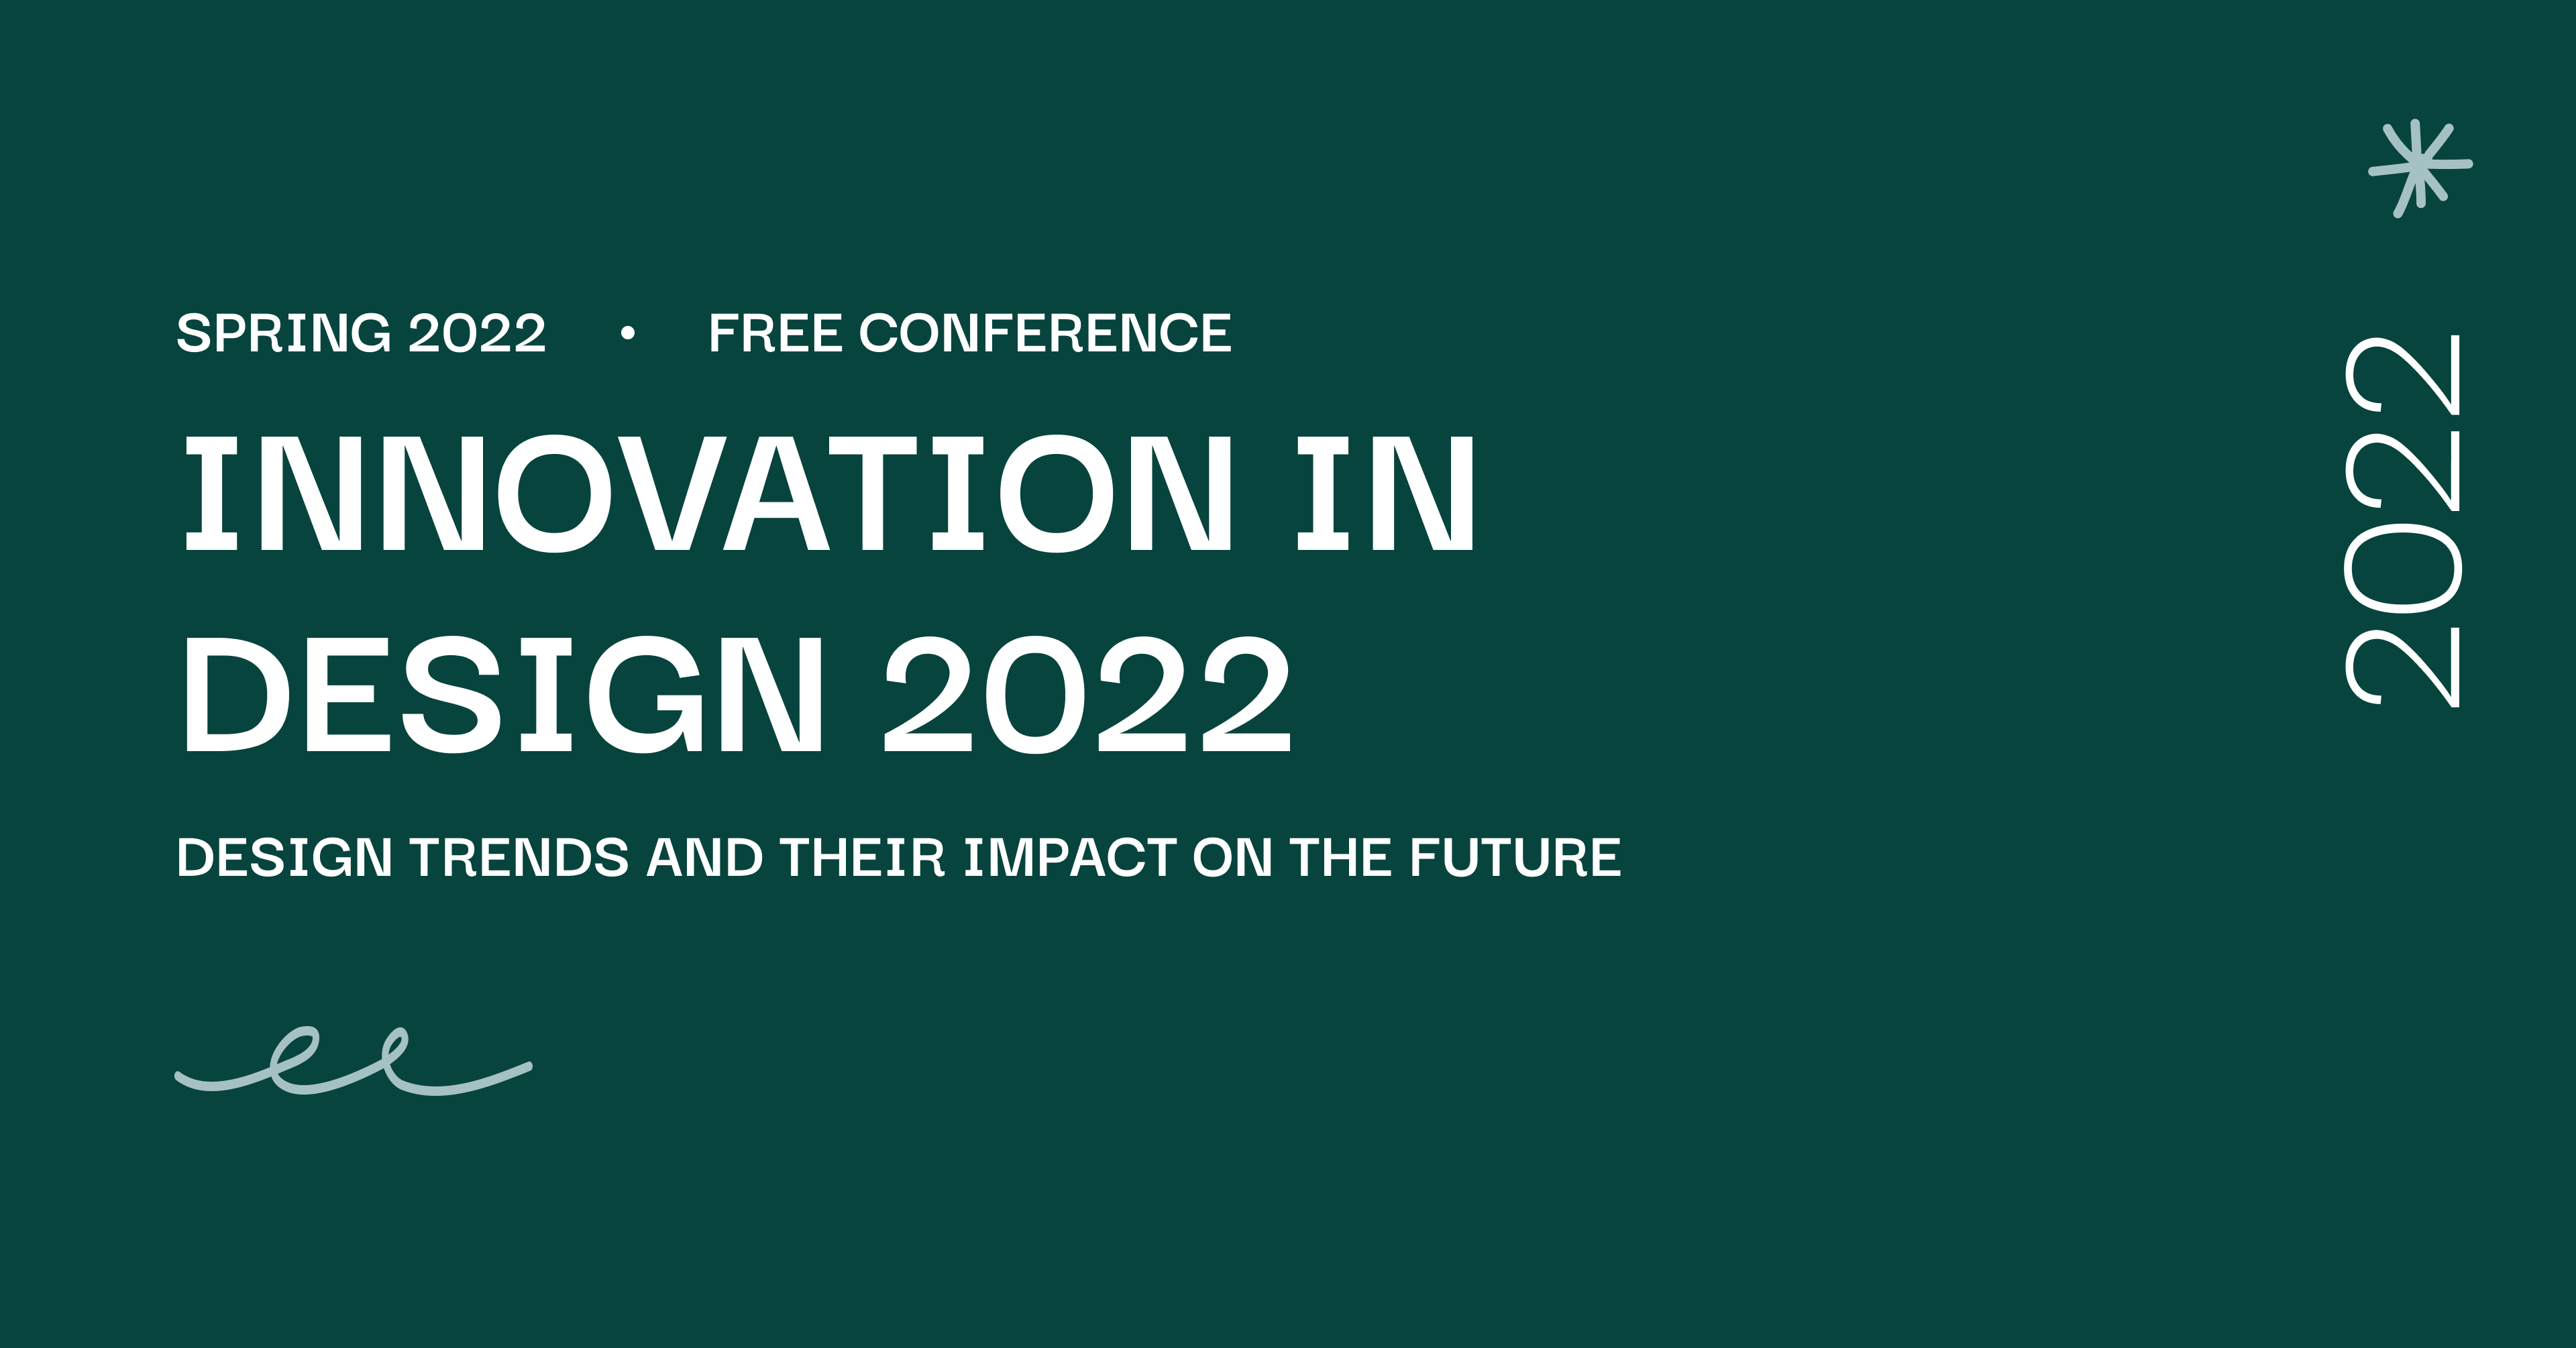 【免費講座】Innovation in Design UI/UX Online Conference (5/13)